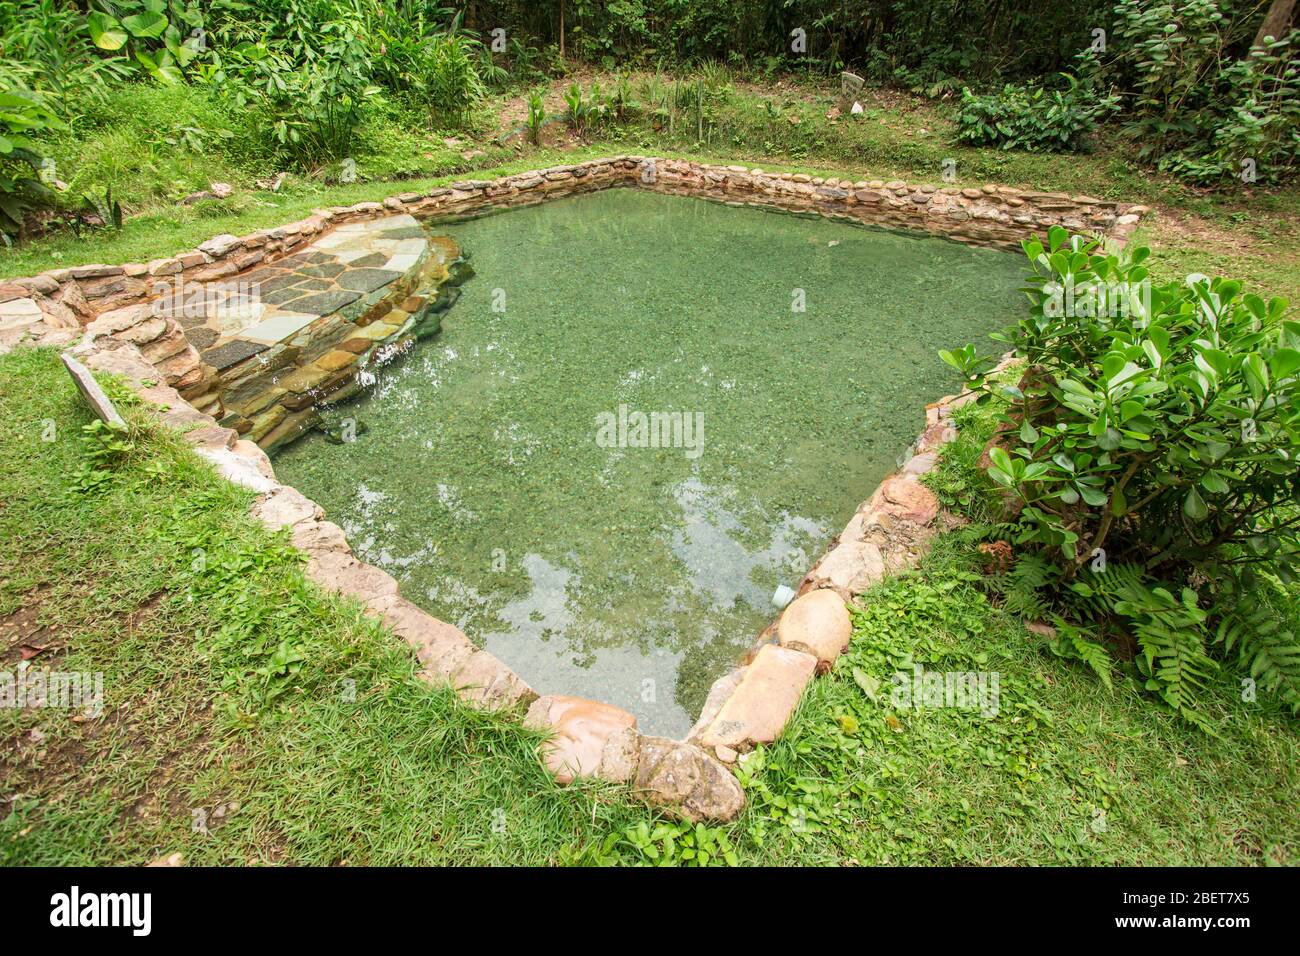 Jardim do Eden eau naturelle de la piscine. Chapada dos veadeiros, Goias, Brésil Banque D'Images